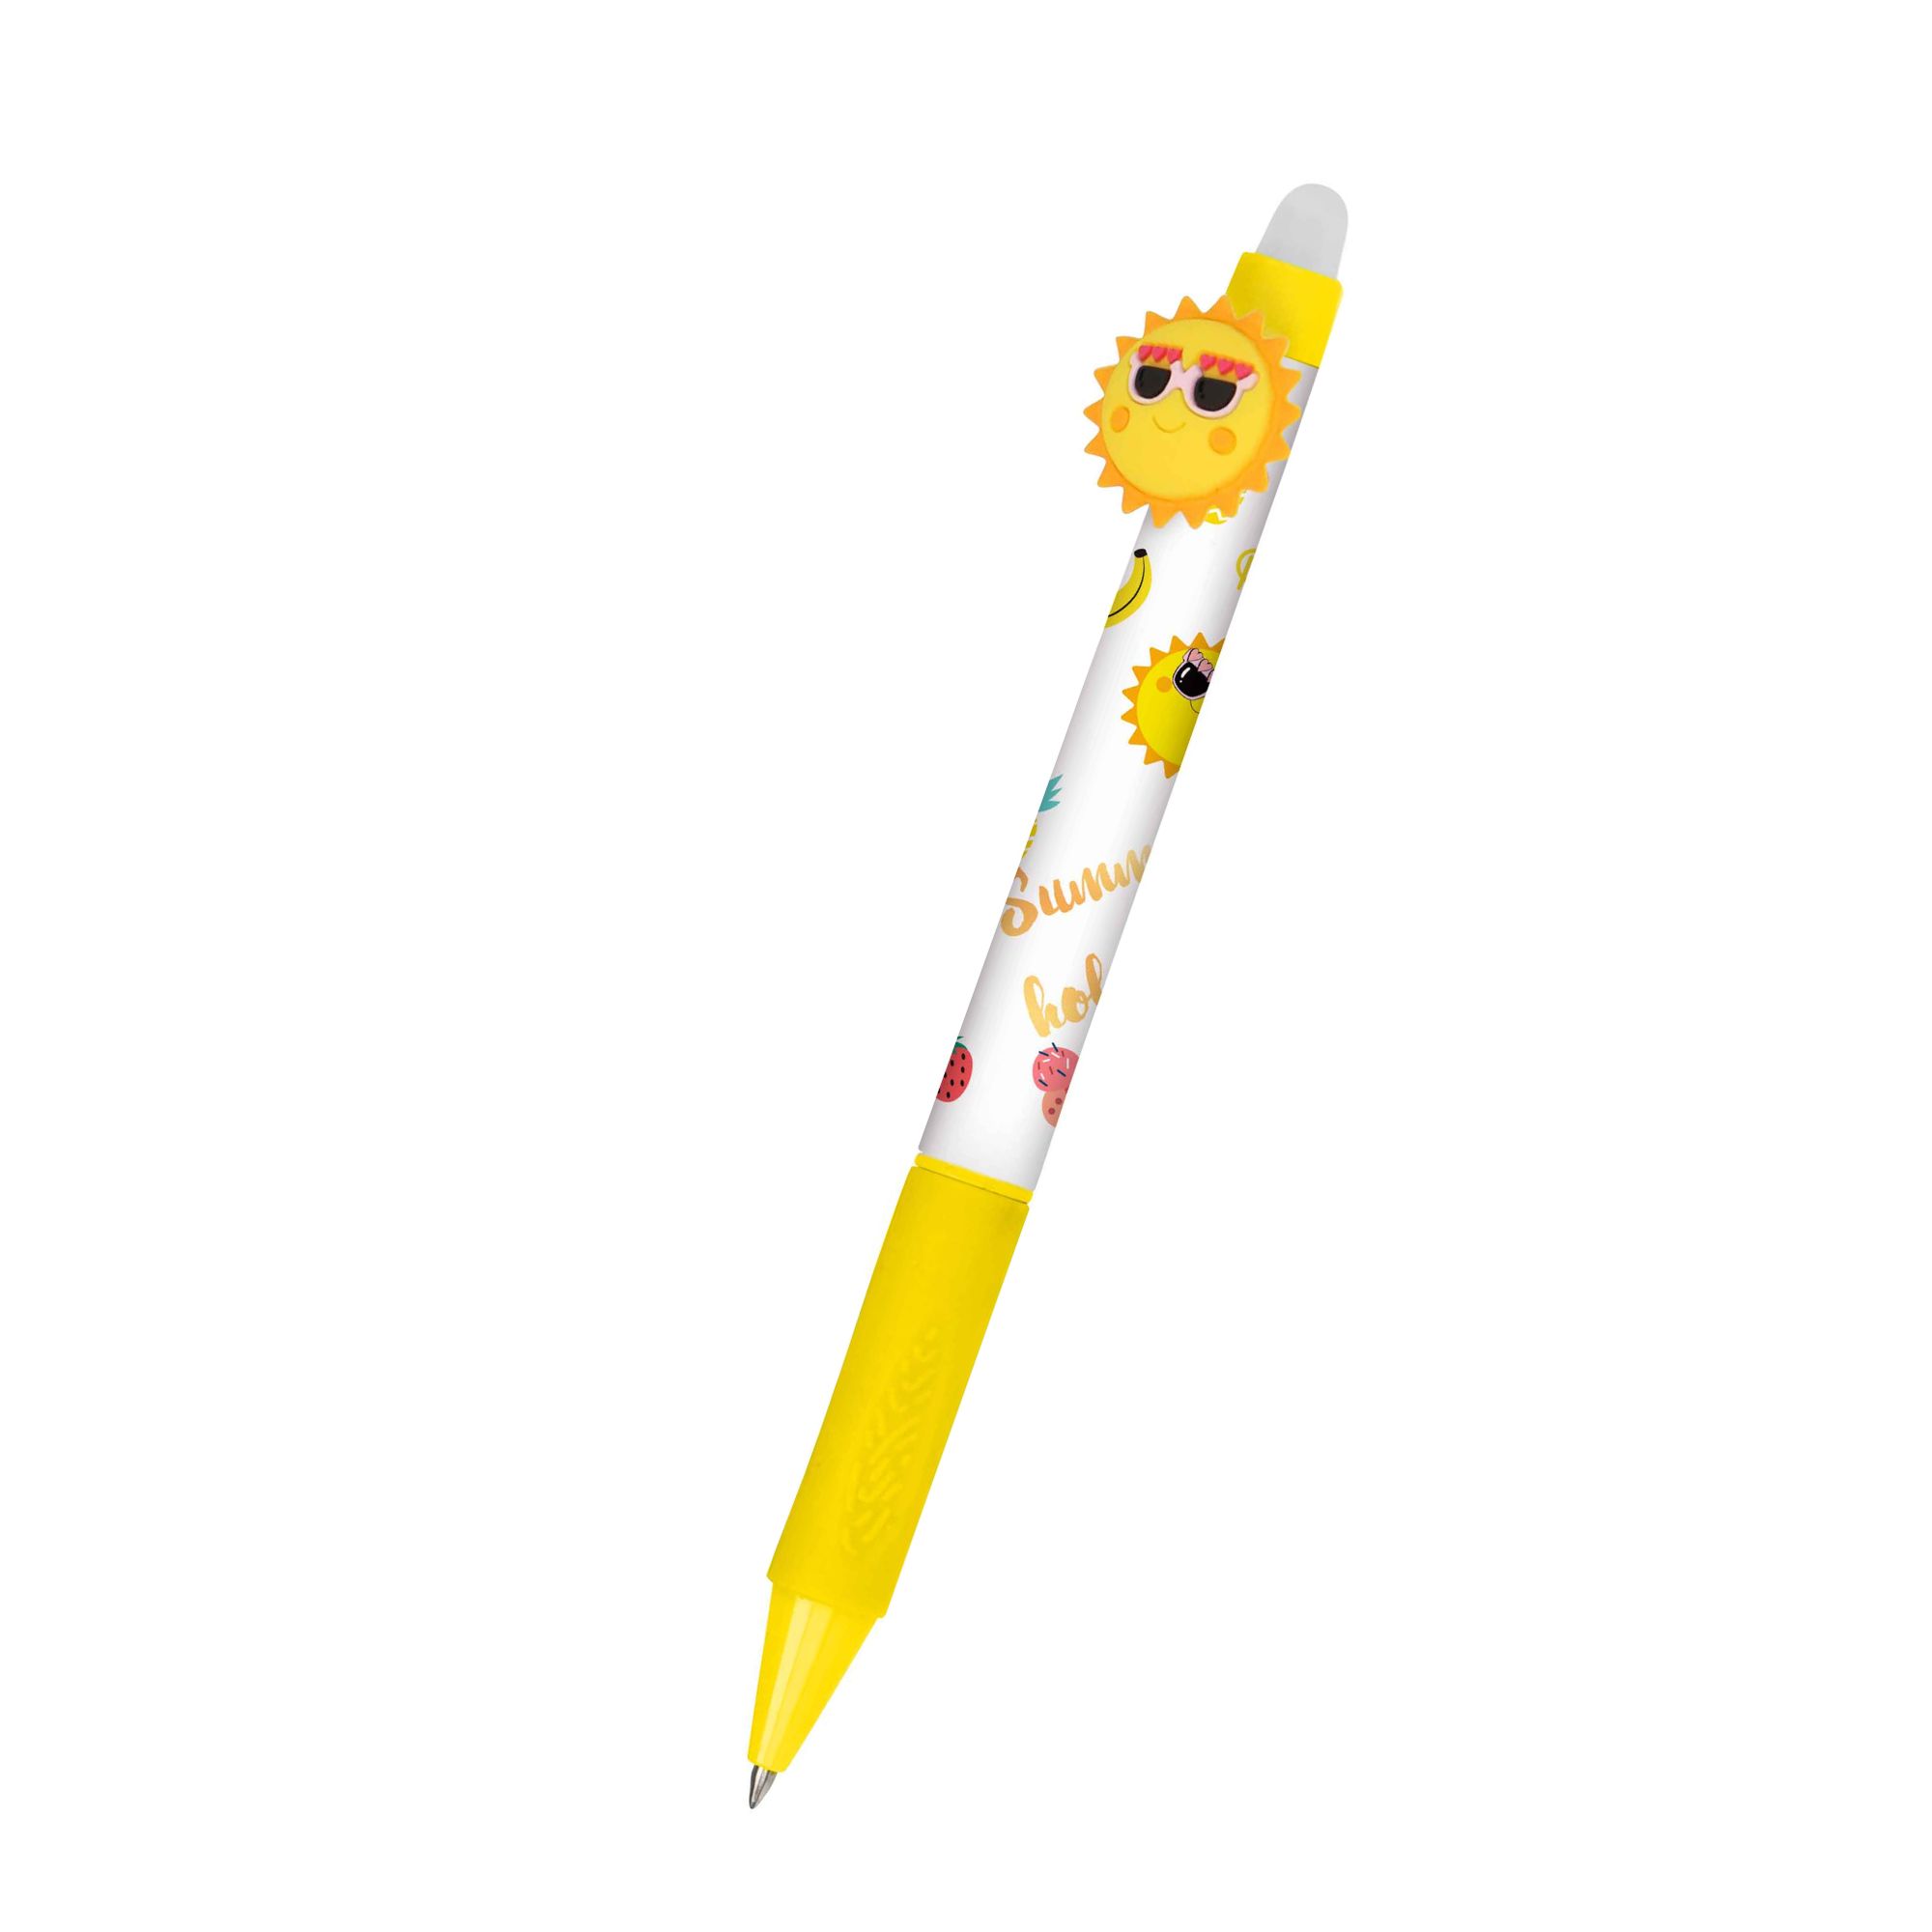 Unser radierbarer Gelschreiber magiXX Fun der Serie Happy für Kinder mit spannenden Designs